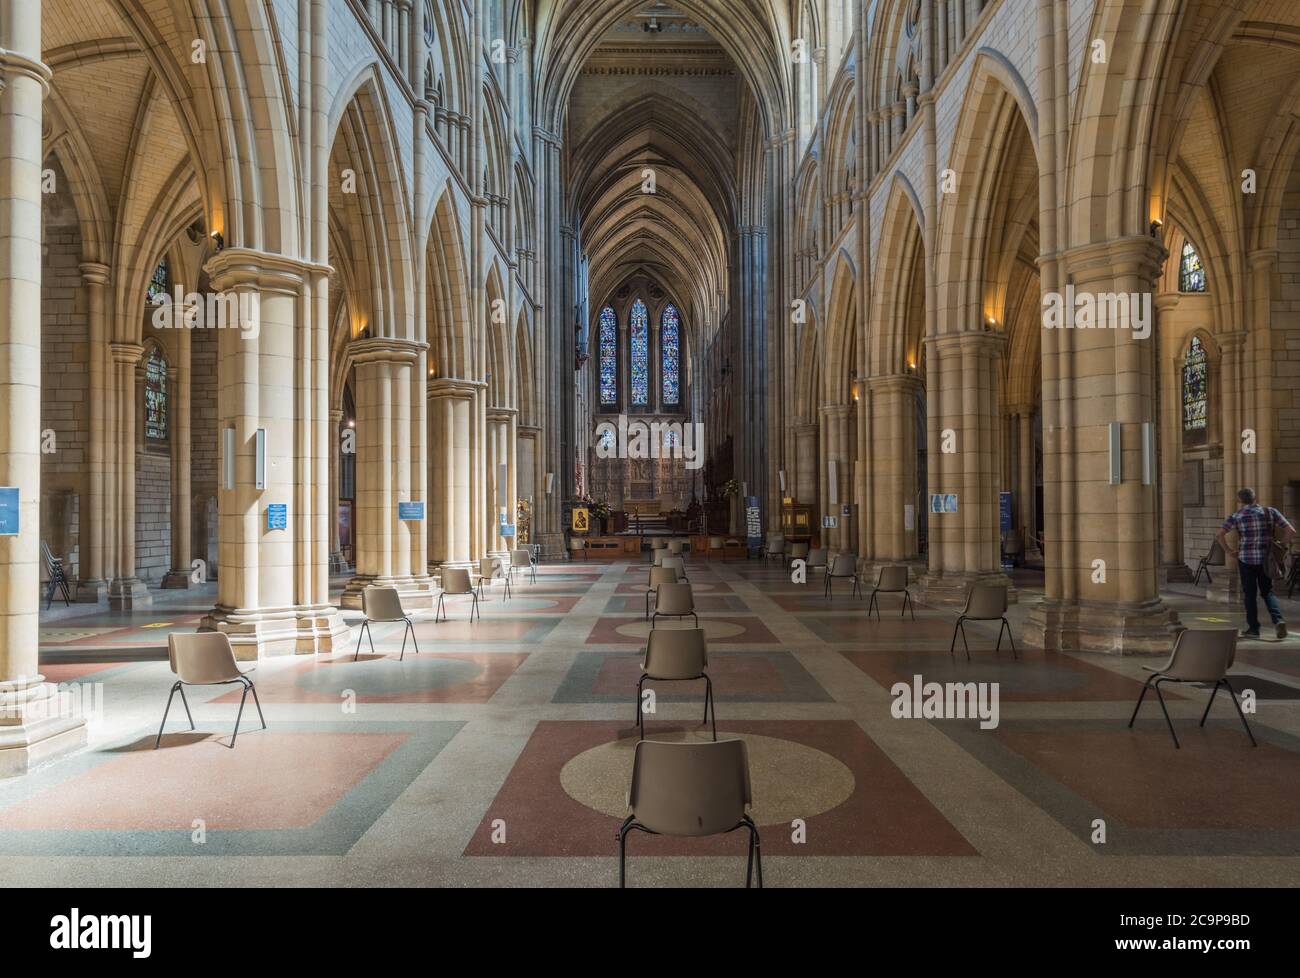 Catedral de Truro mostrando el espacio entre asientos para cumplir con las reglas de distanciamiento social Foto de stock